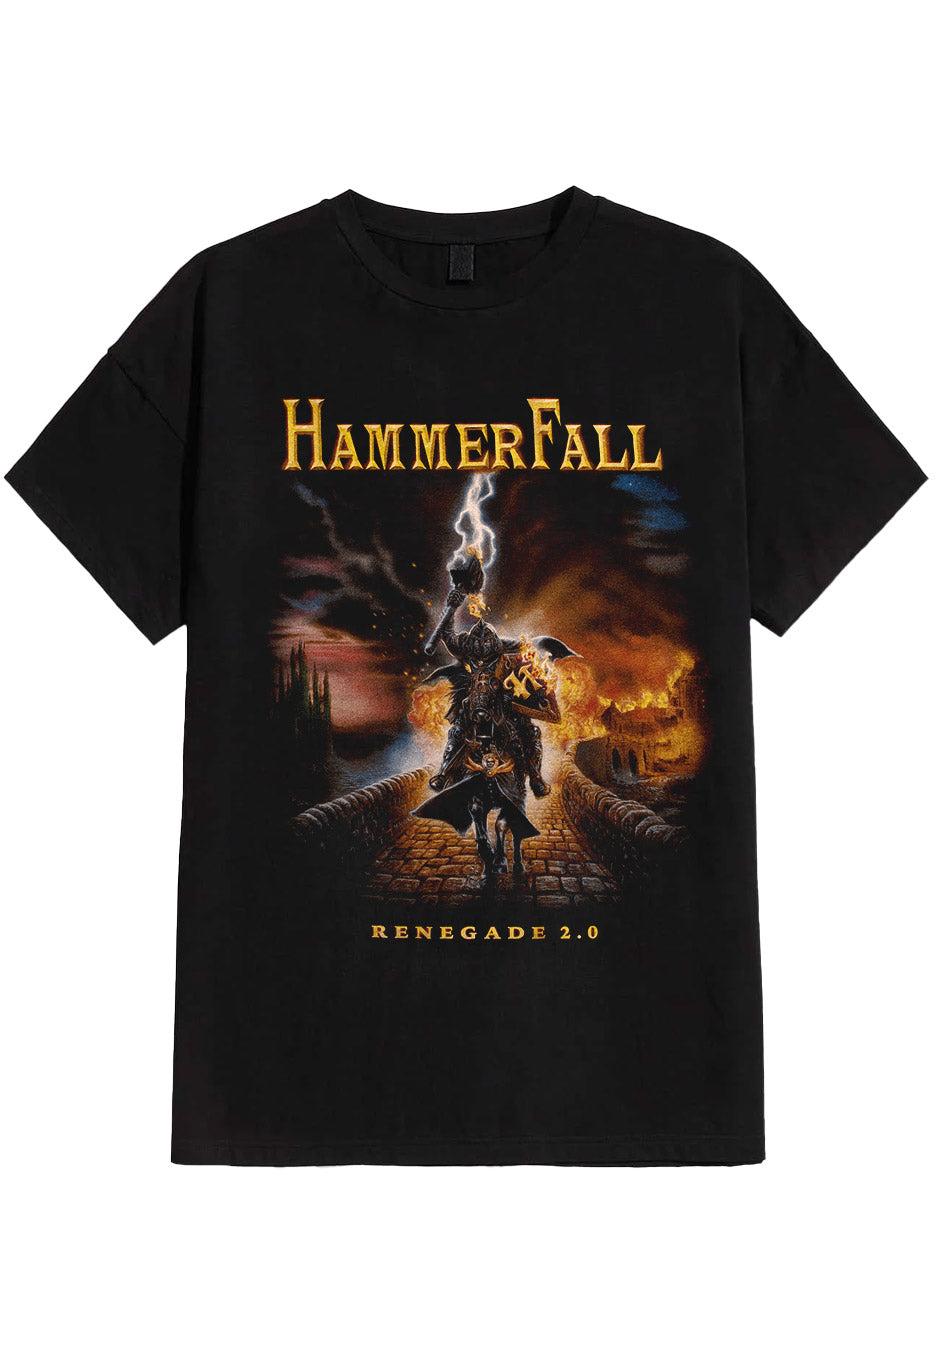 Hammerfall - Renegade 2.0 - T-Shirt